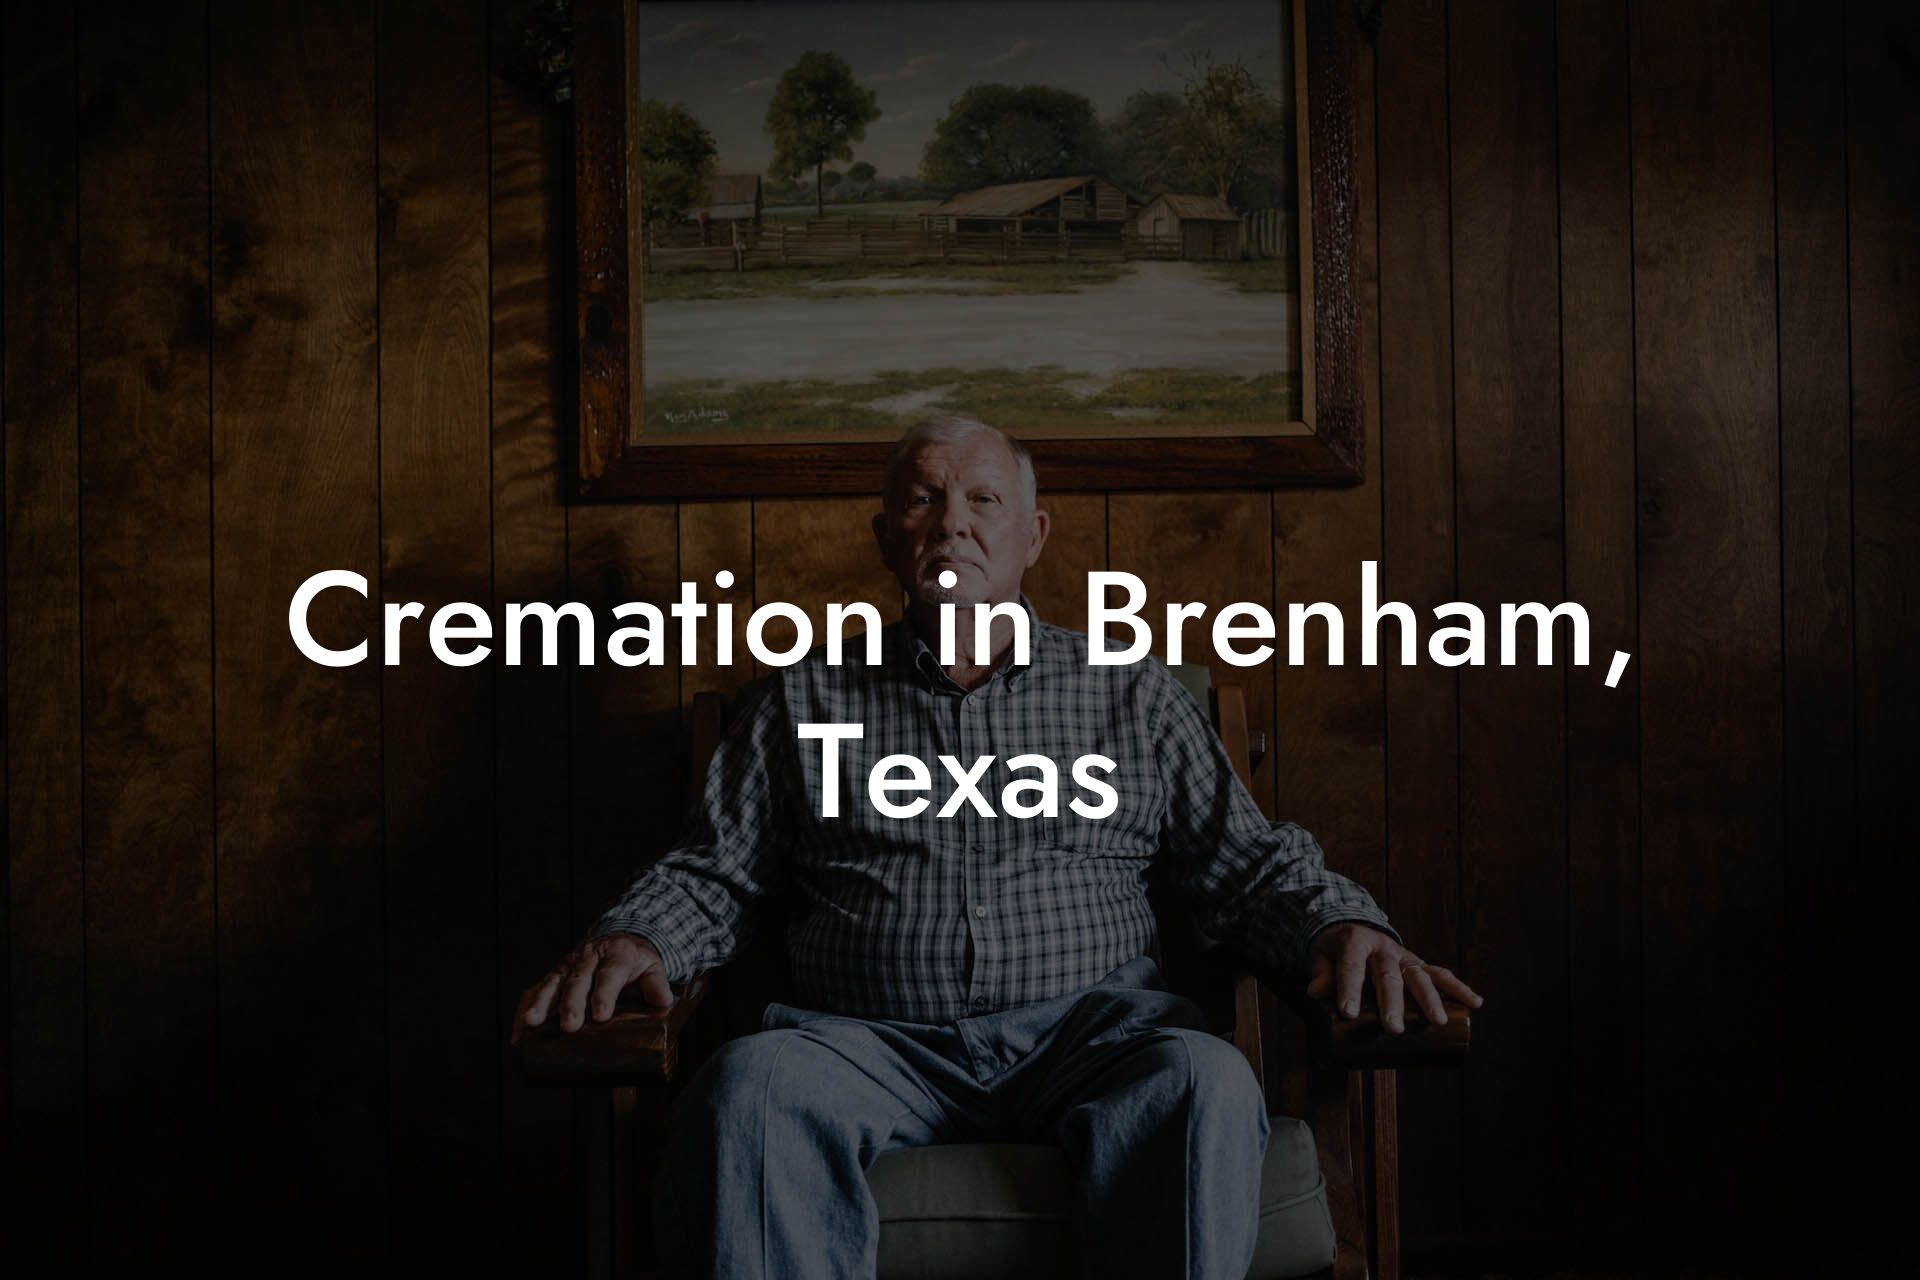 Cremation in Brenham, Texas